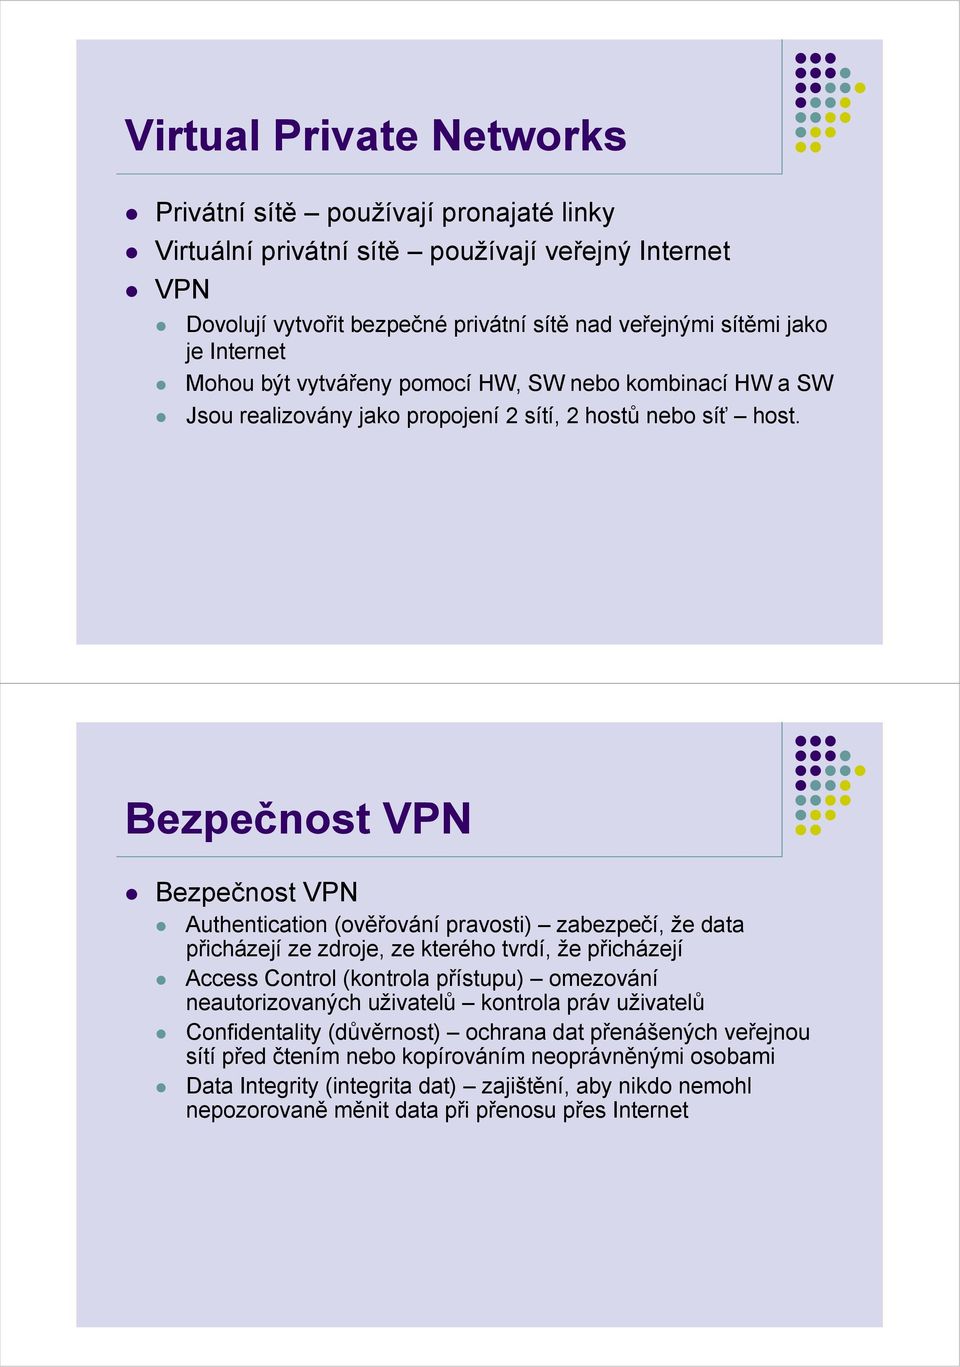 Bezpečnost VPN Bezpečnost VPN Authentication (ověřování pravosti) zabezpečí, že data přicházejí ze zdroje, ze kterého tvrdí, že přicházejí Access Control (kontrola přístupu) omezování